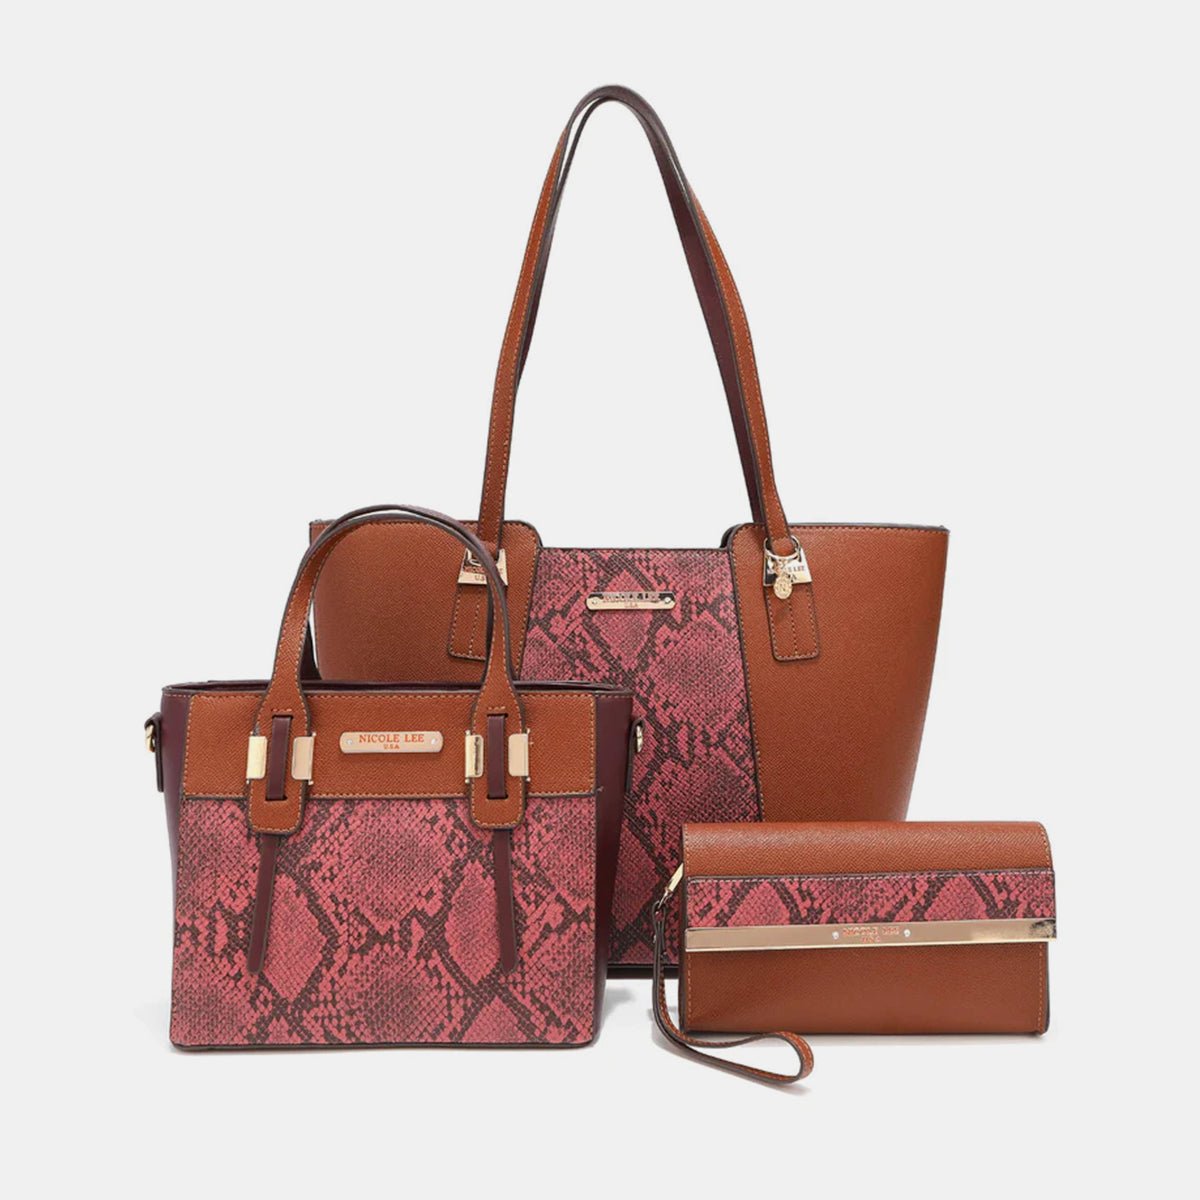 3-Piece Snake Print Handbag Set - 4 Ever Trending